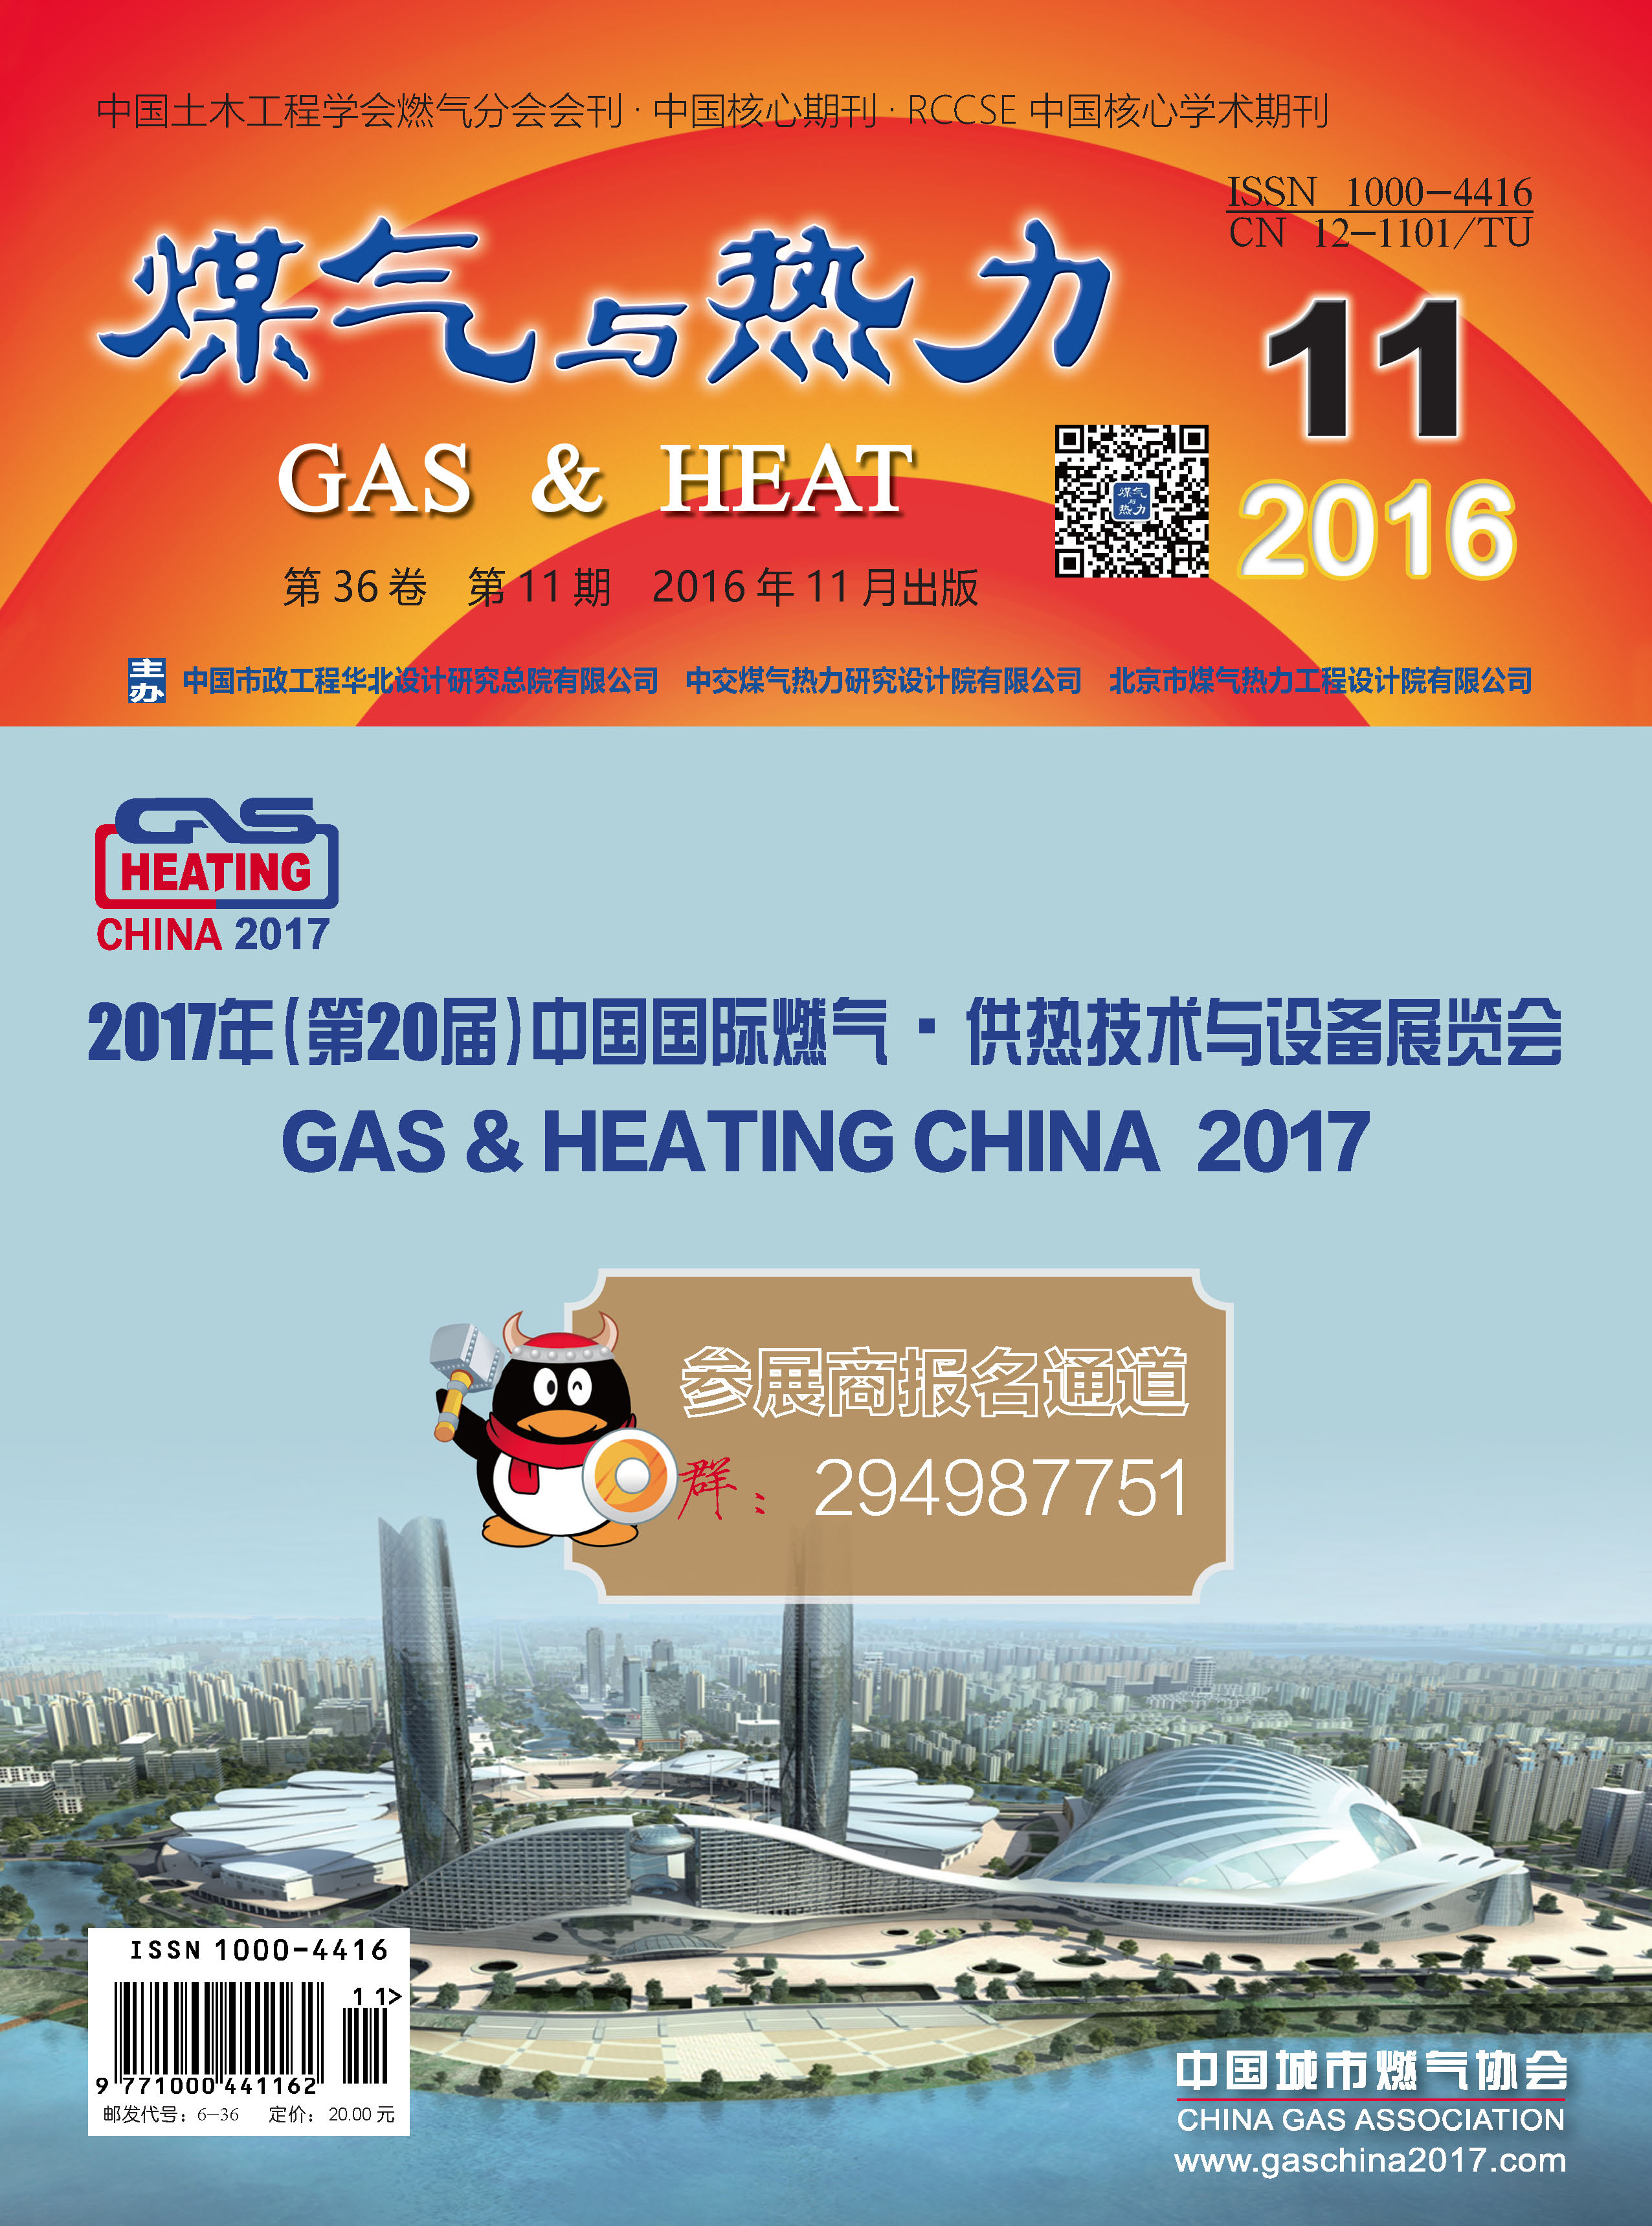 《煤气与热力》2016年11月刊